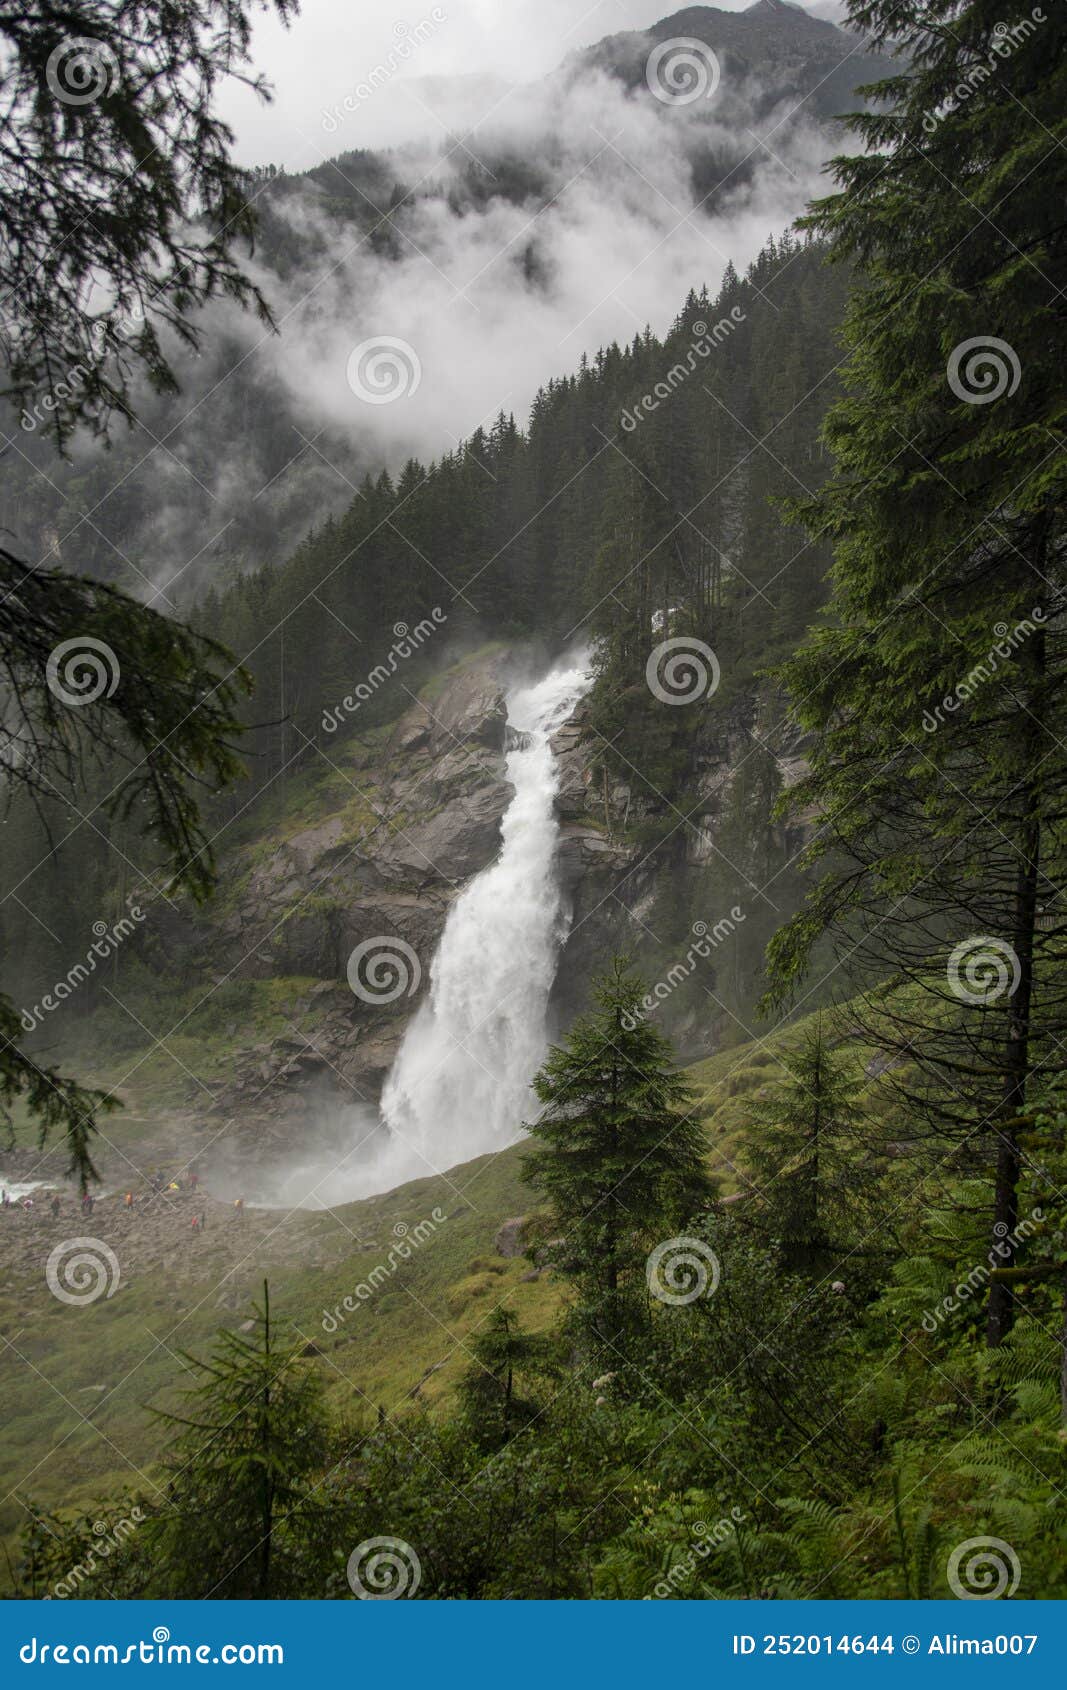 krimmler wasserfÃÂ¤lle, krimml waterfalls